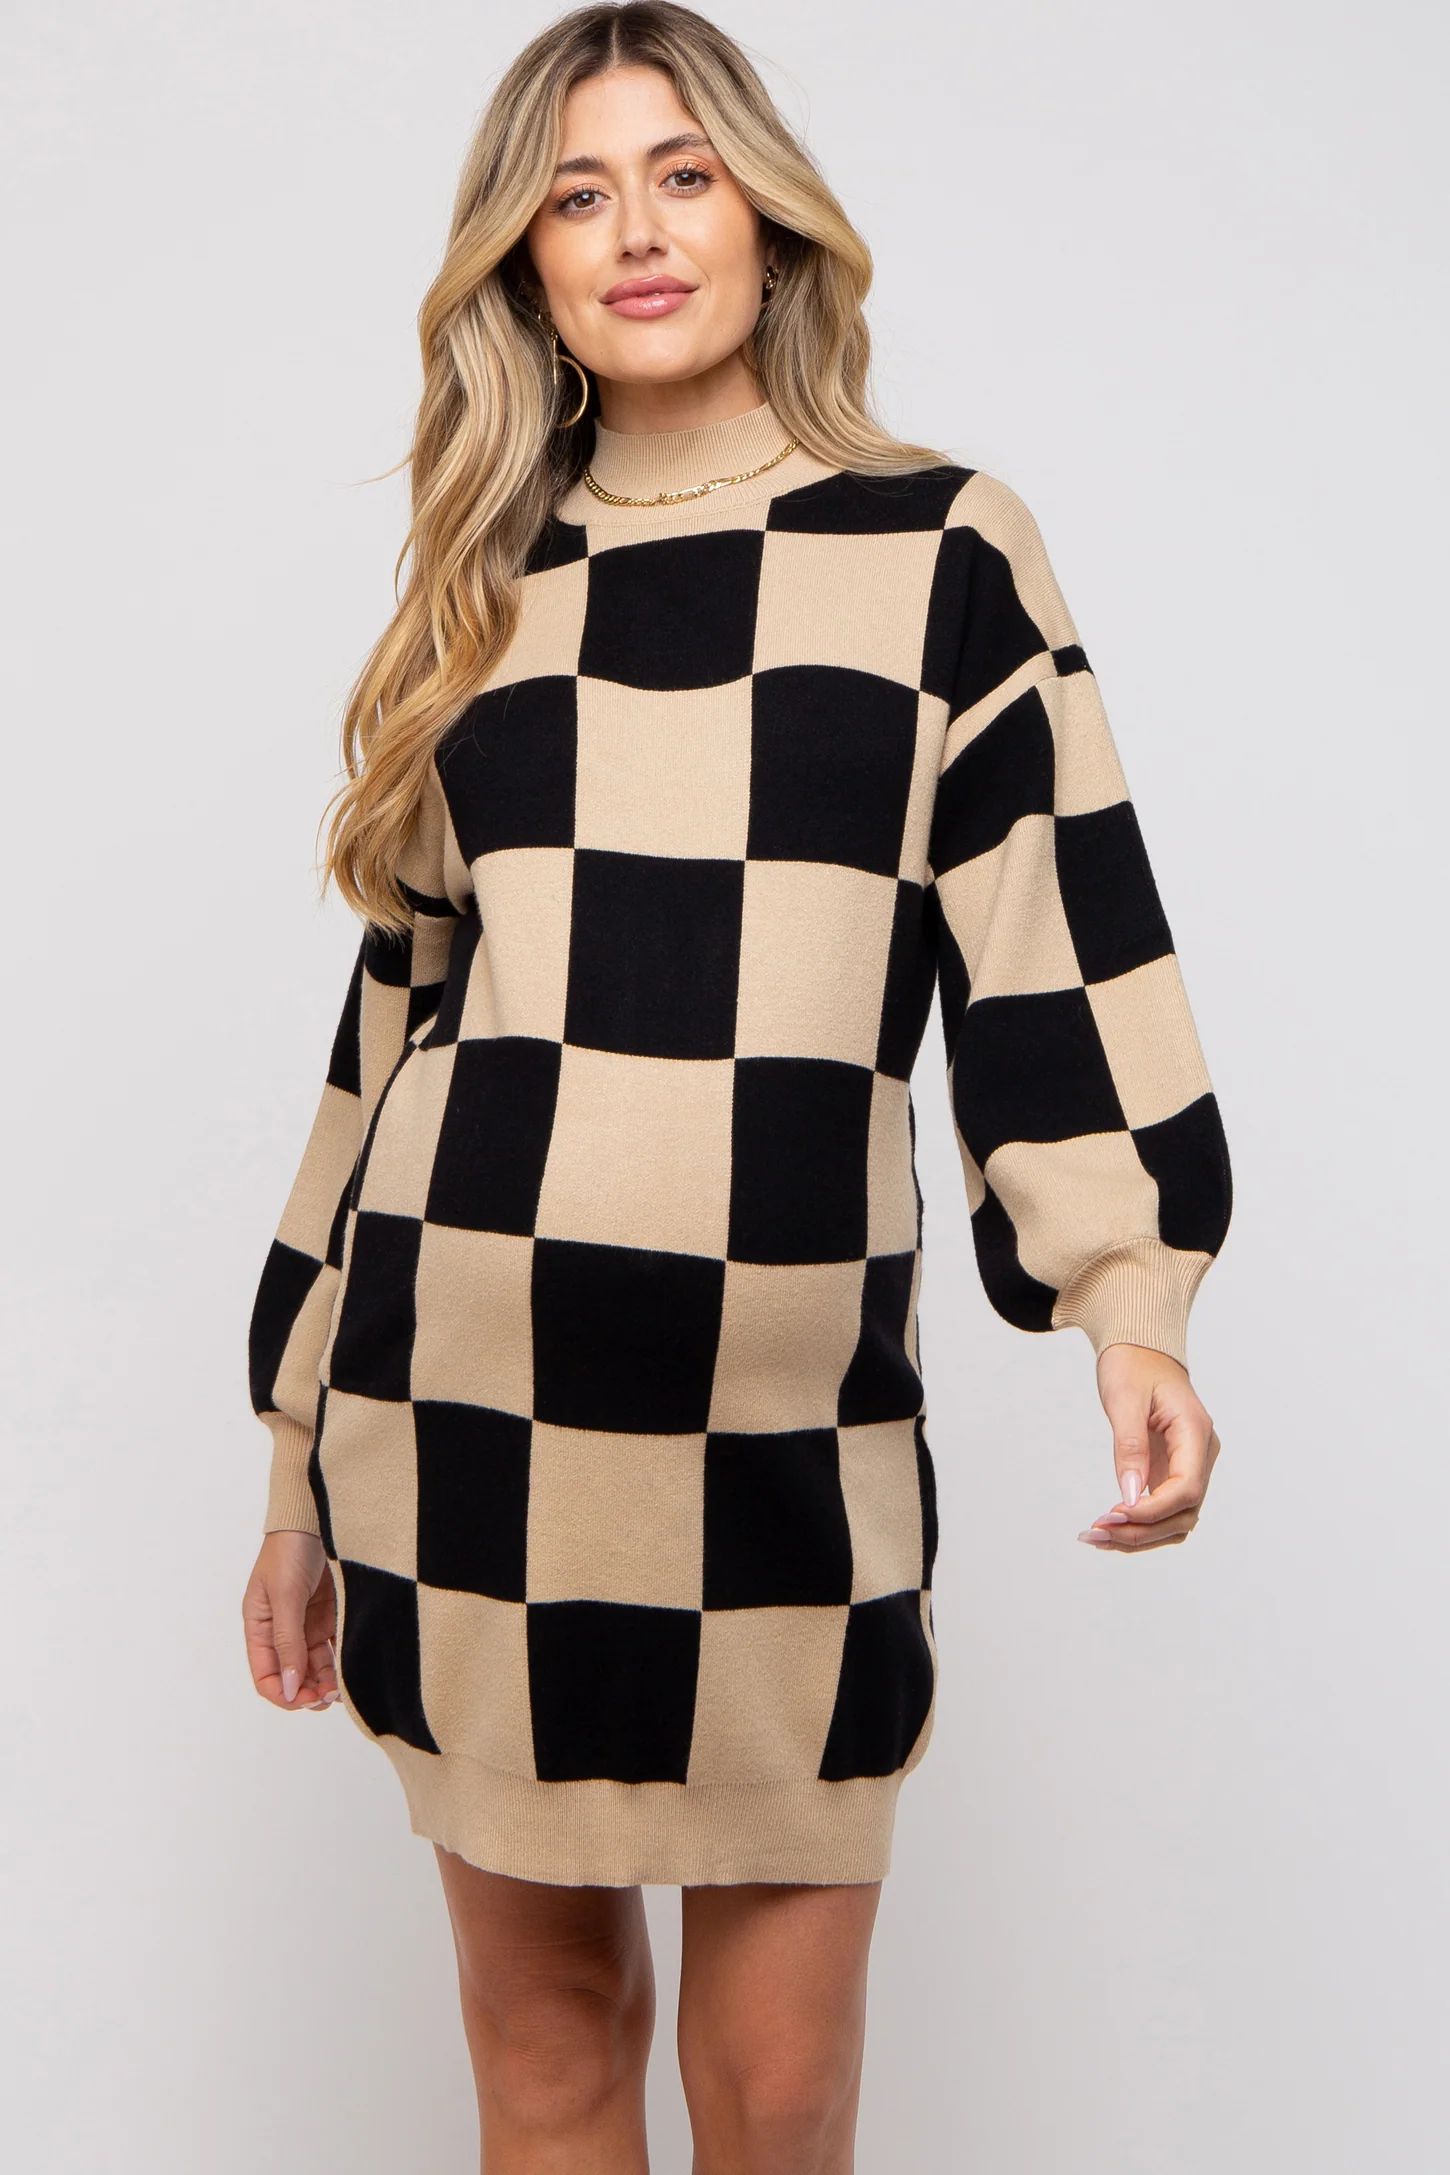 Black Checkered Knit Maternity Sweater Dress | PinkBlush Maternity